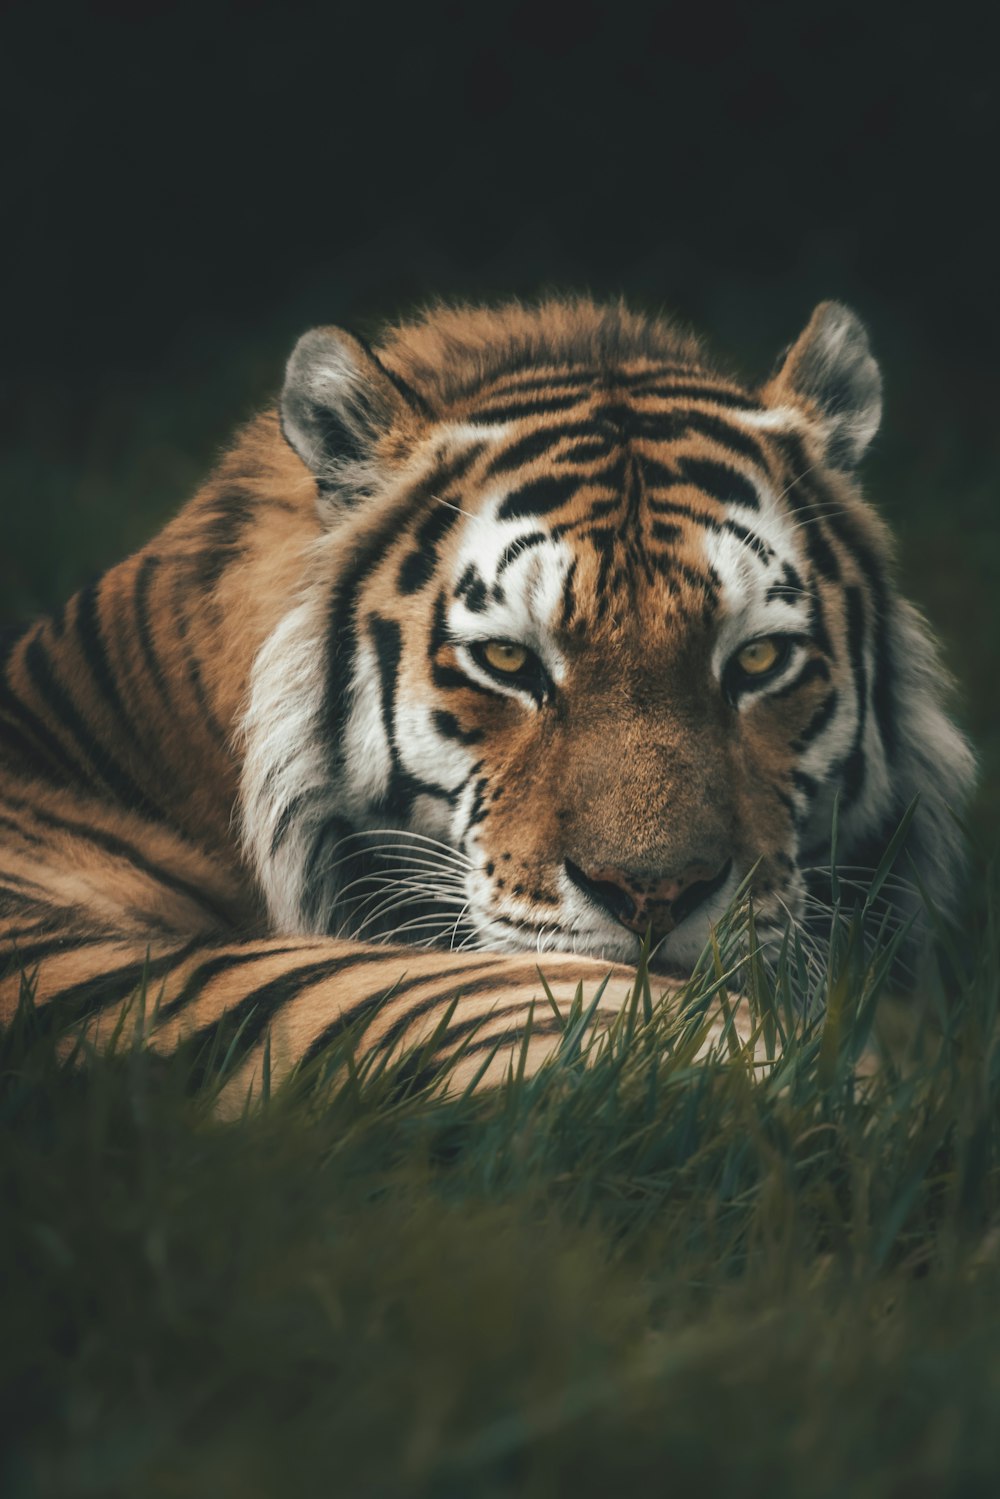 Un tigre tendido en la hierba mirando a la cámara